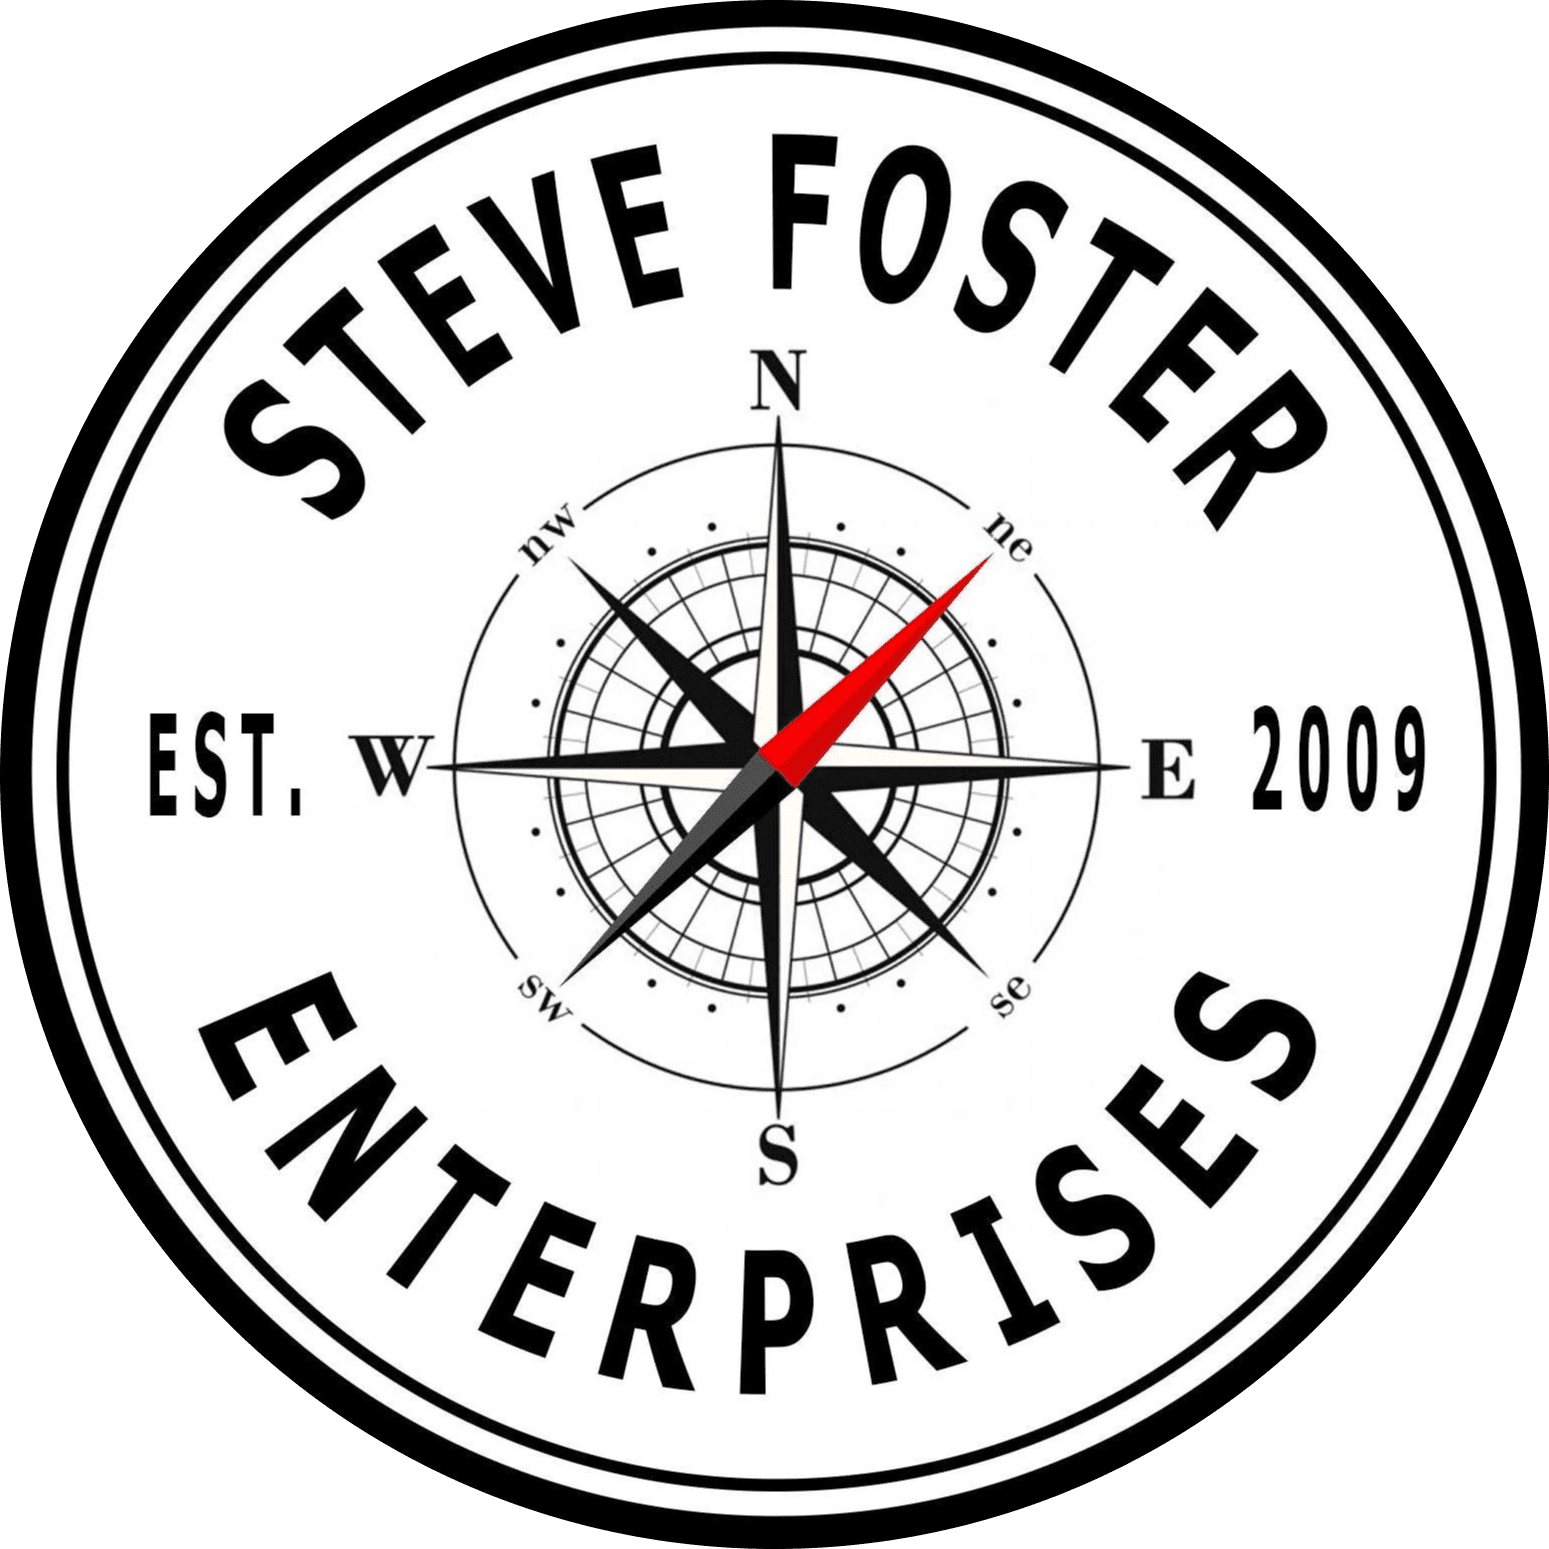 Steve Foster Enterprises